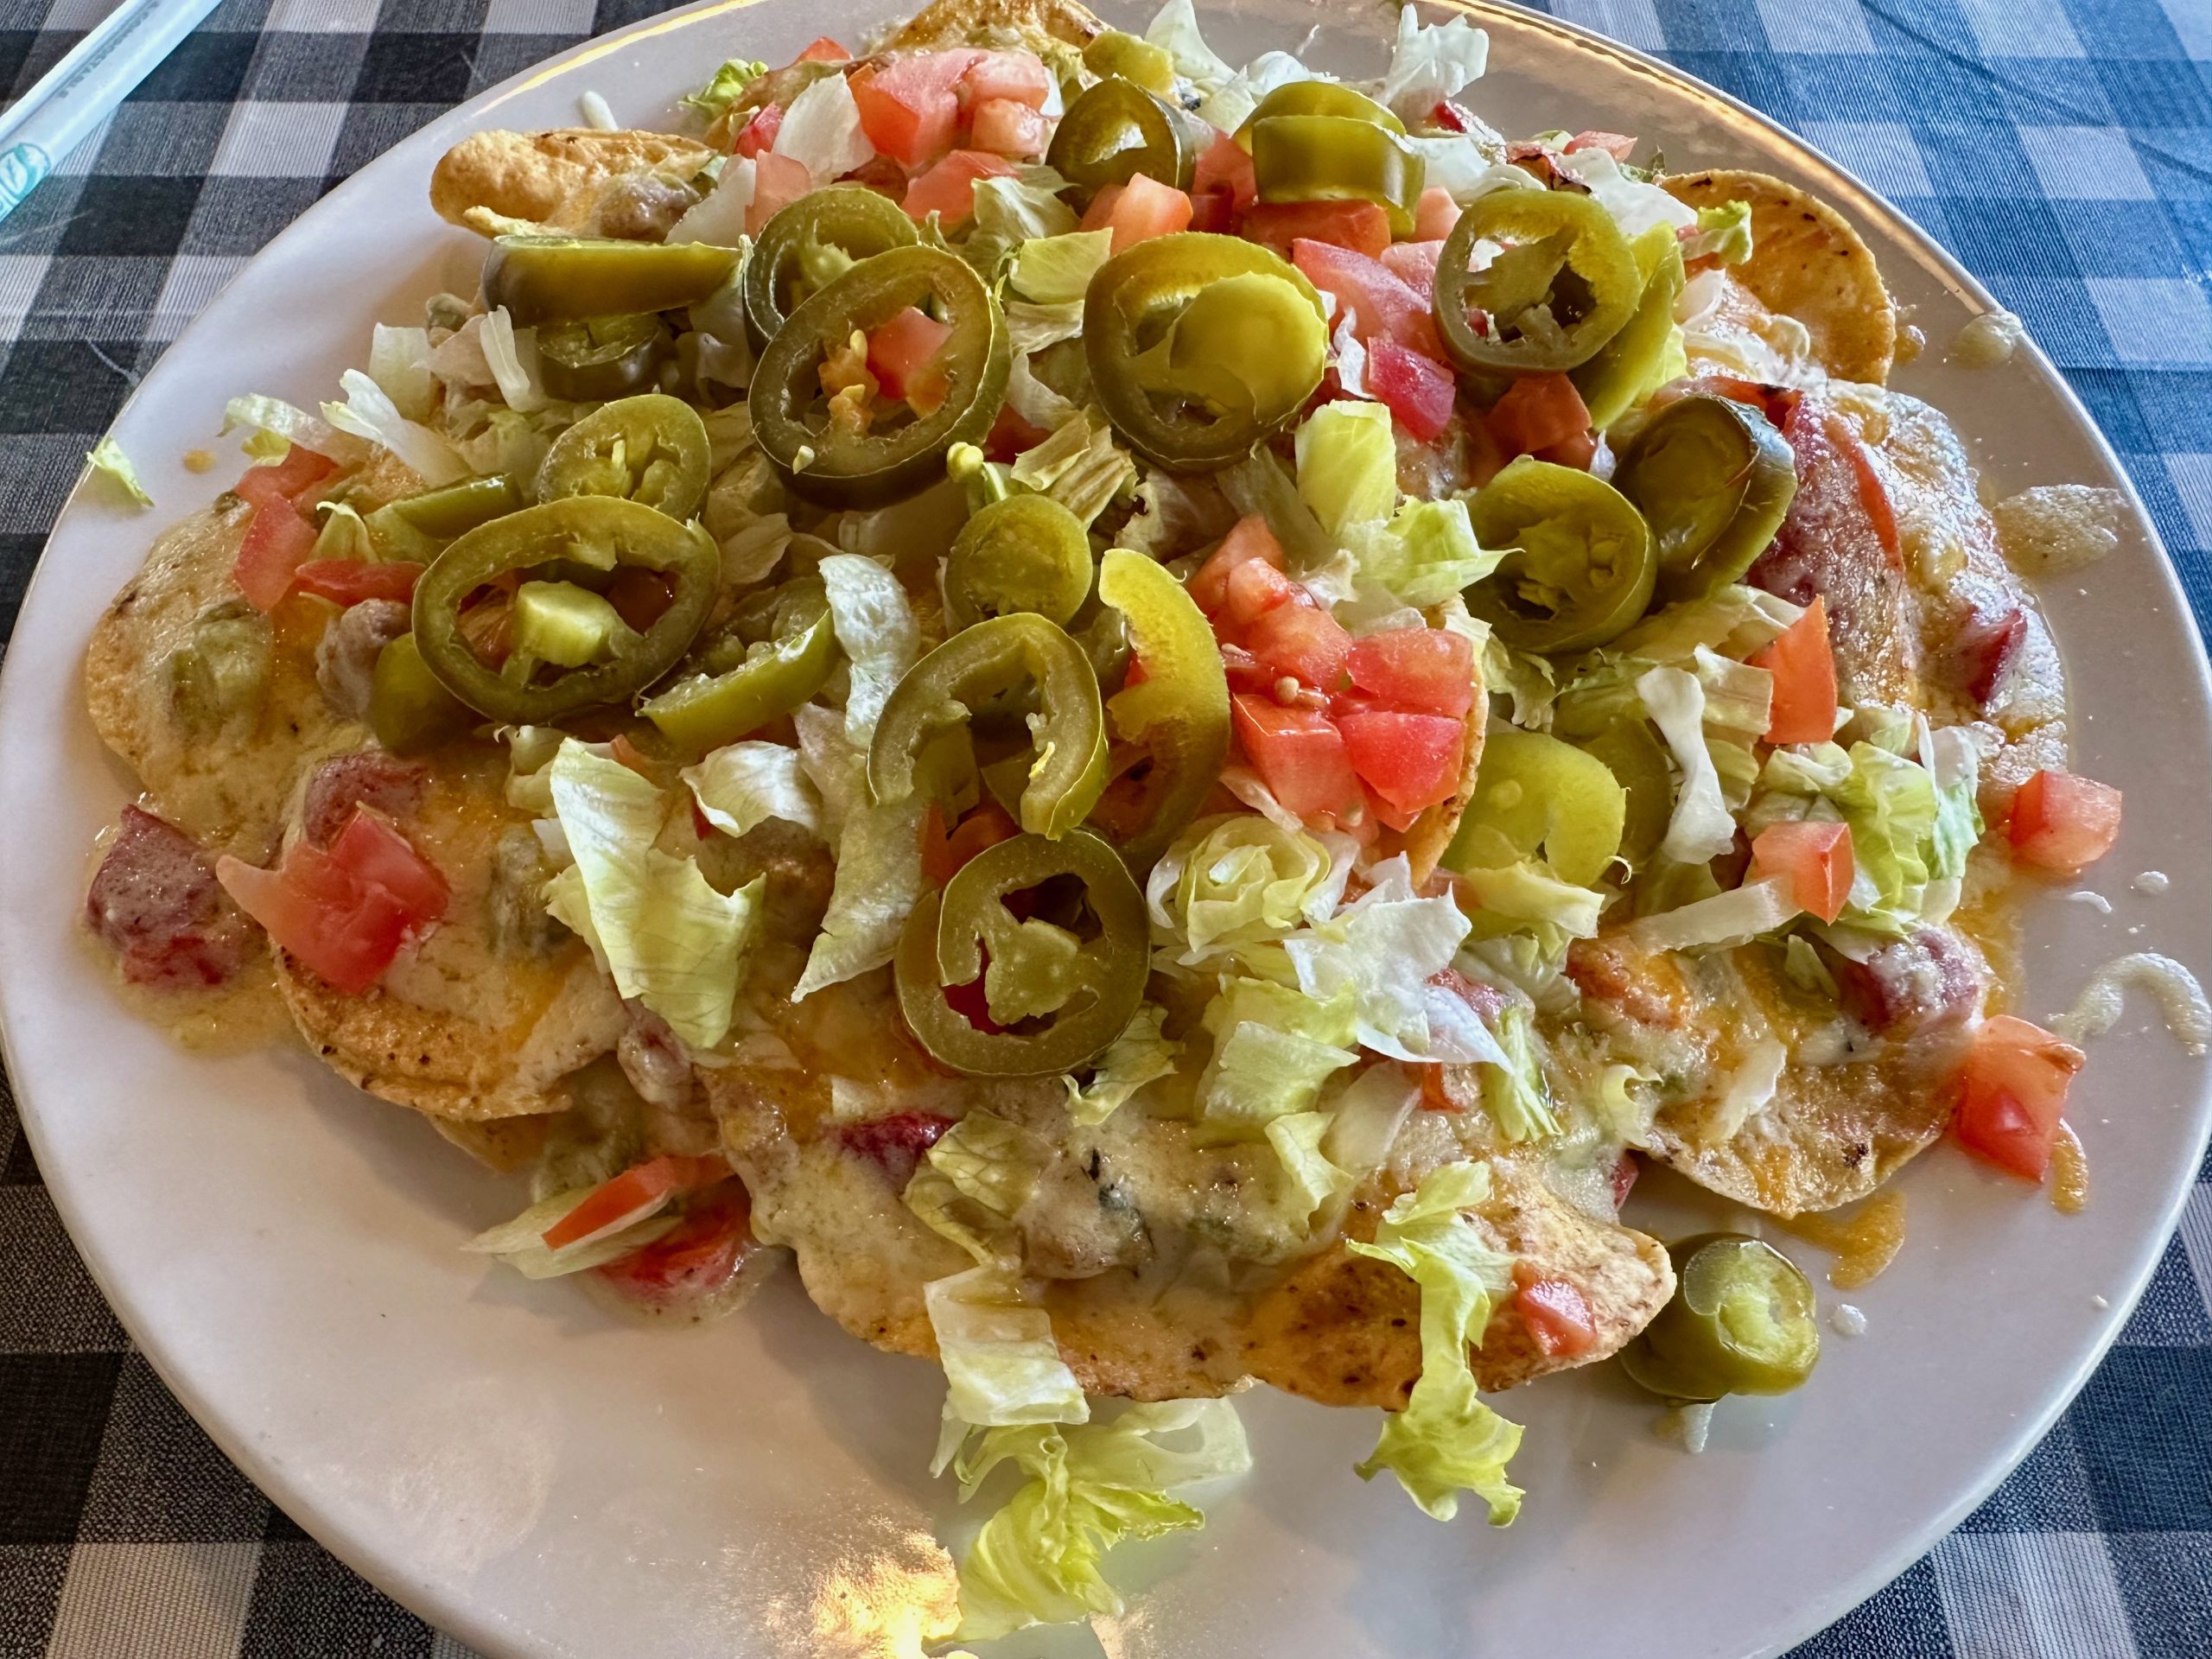 Mario’s Pizza & Ristorante – Albuquerque, New Mexico